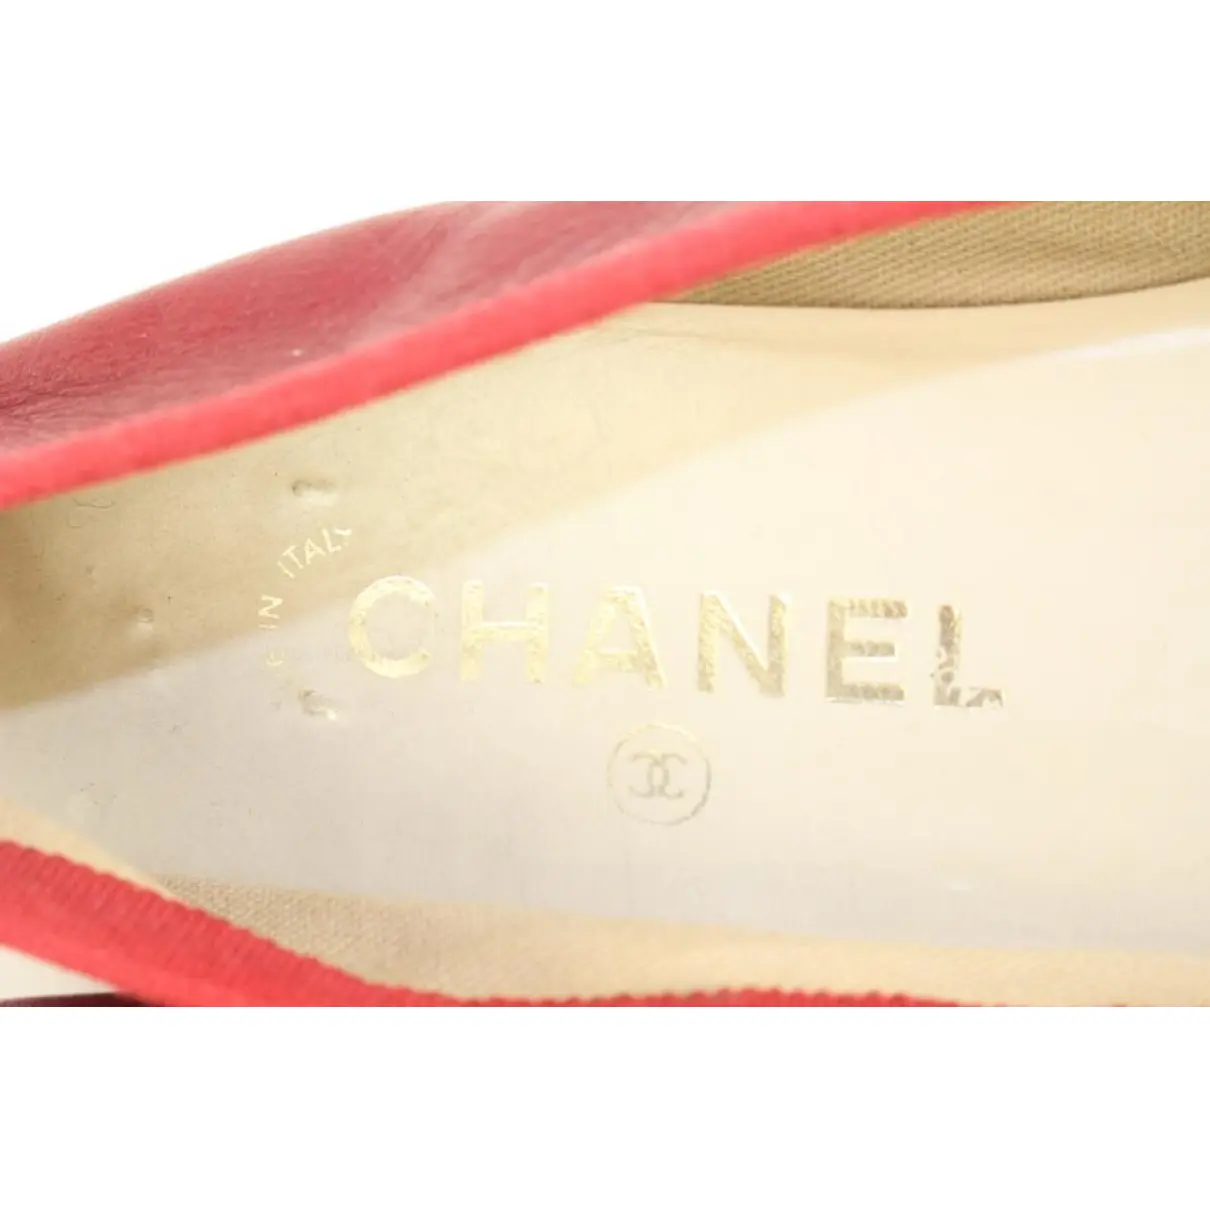 Luxury Chanel Flats Women